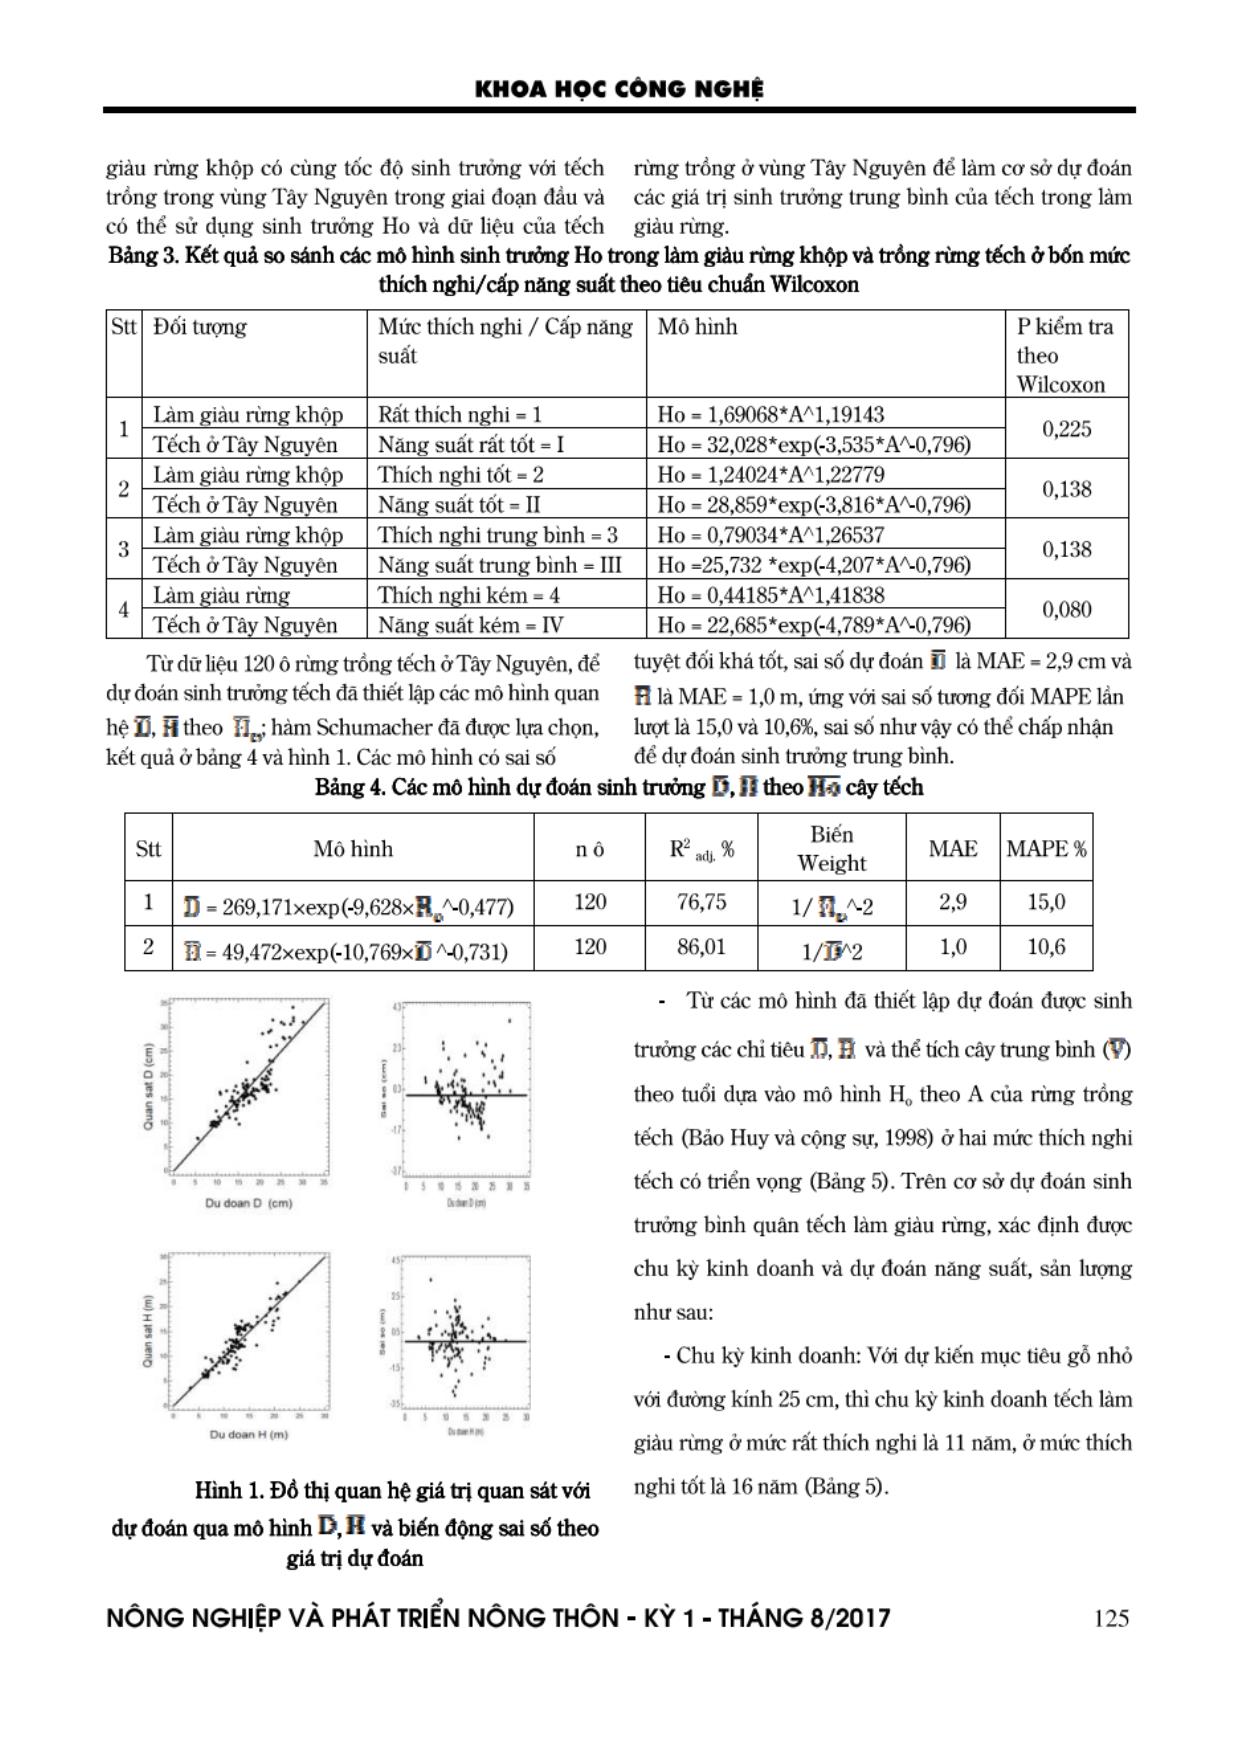 Dự đoán năng suất và hiệu quả kinh tế của cây tếch (Tectona grandis L.F.) trong làm giàu rùng khộp suy thoái trang 7